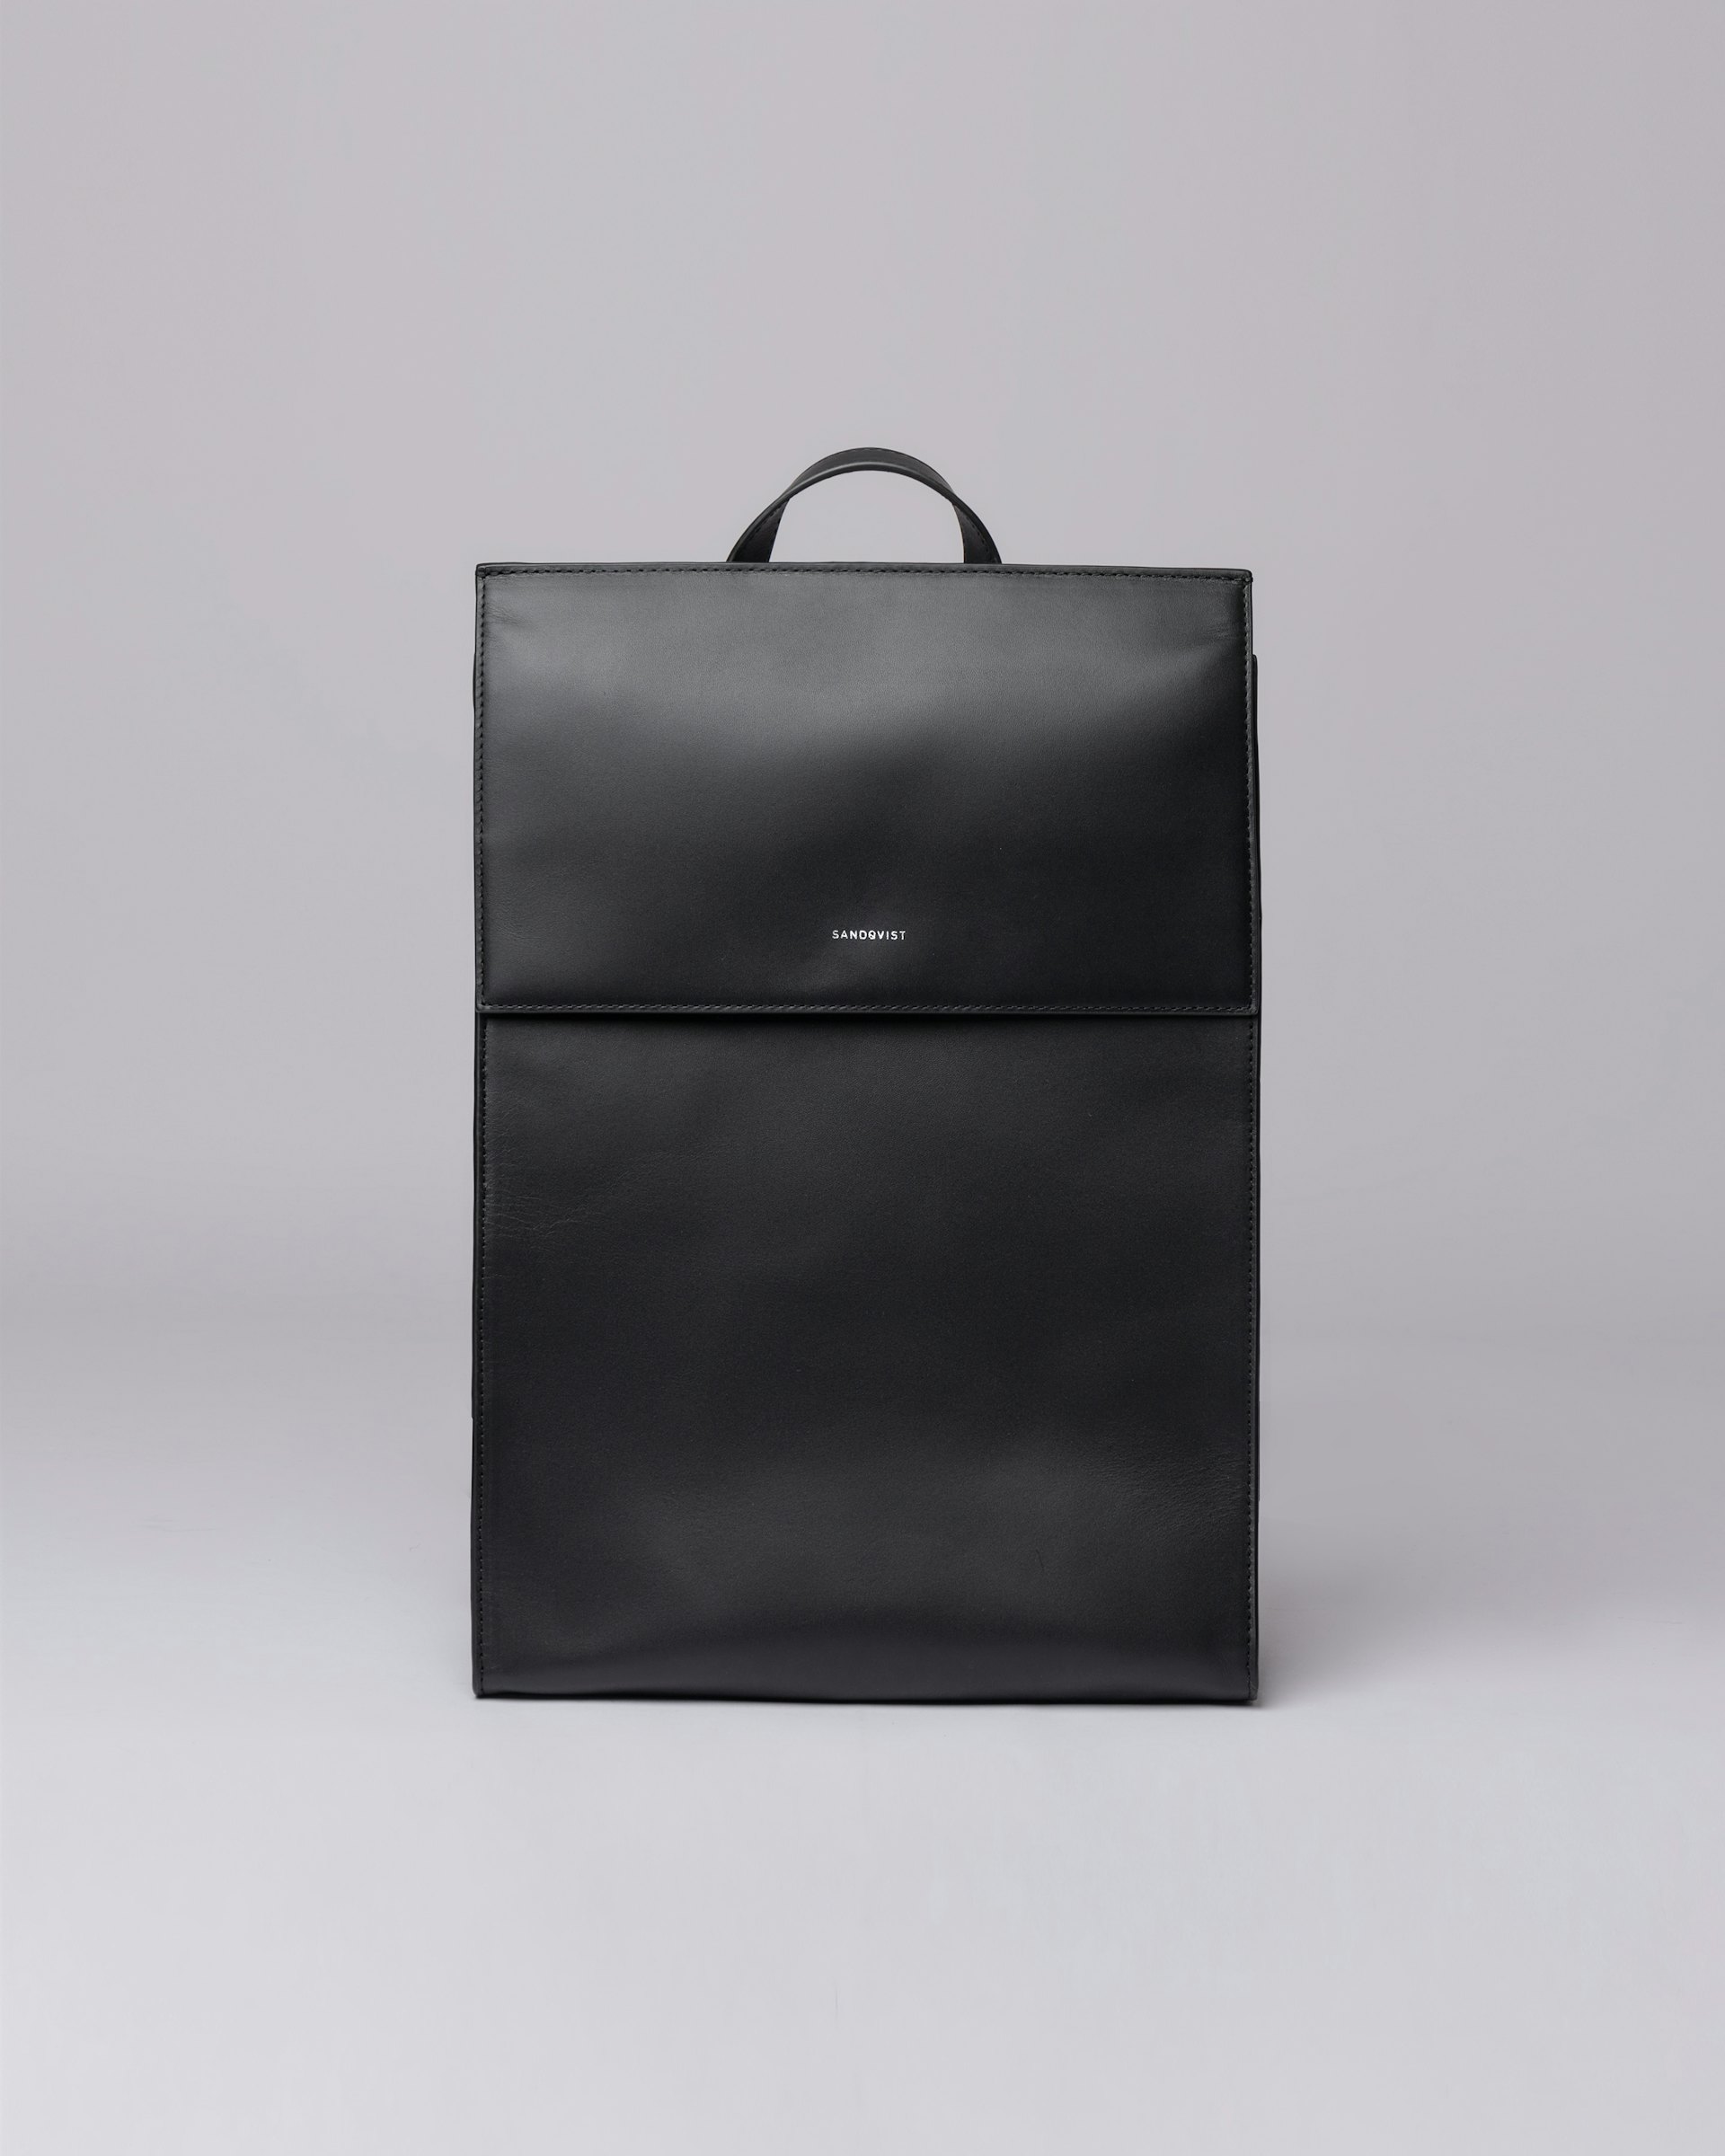 Lovis tillhör kategorin Backpacks och är i färgen black